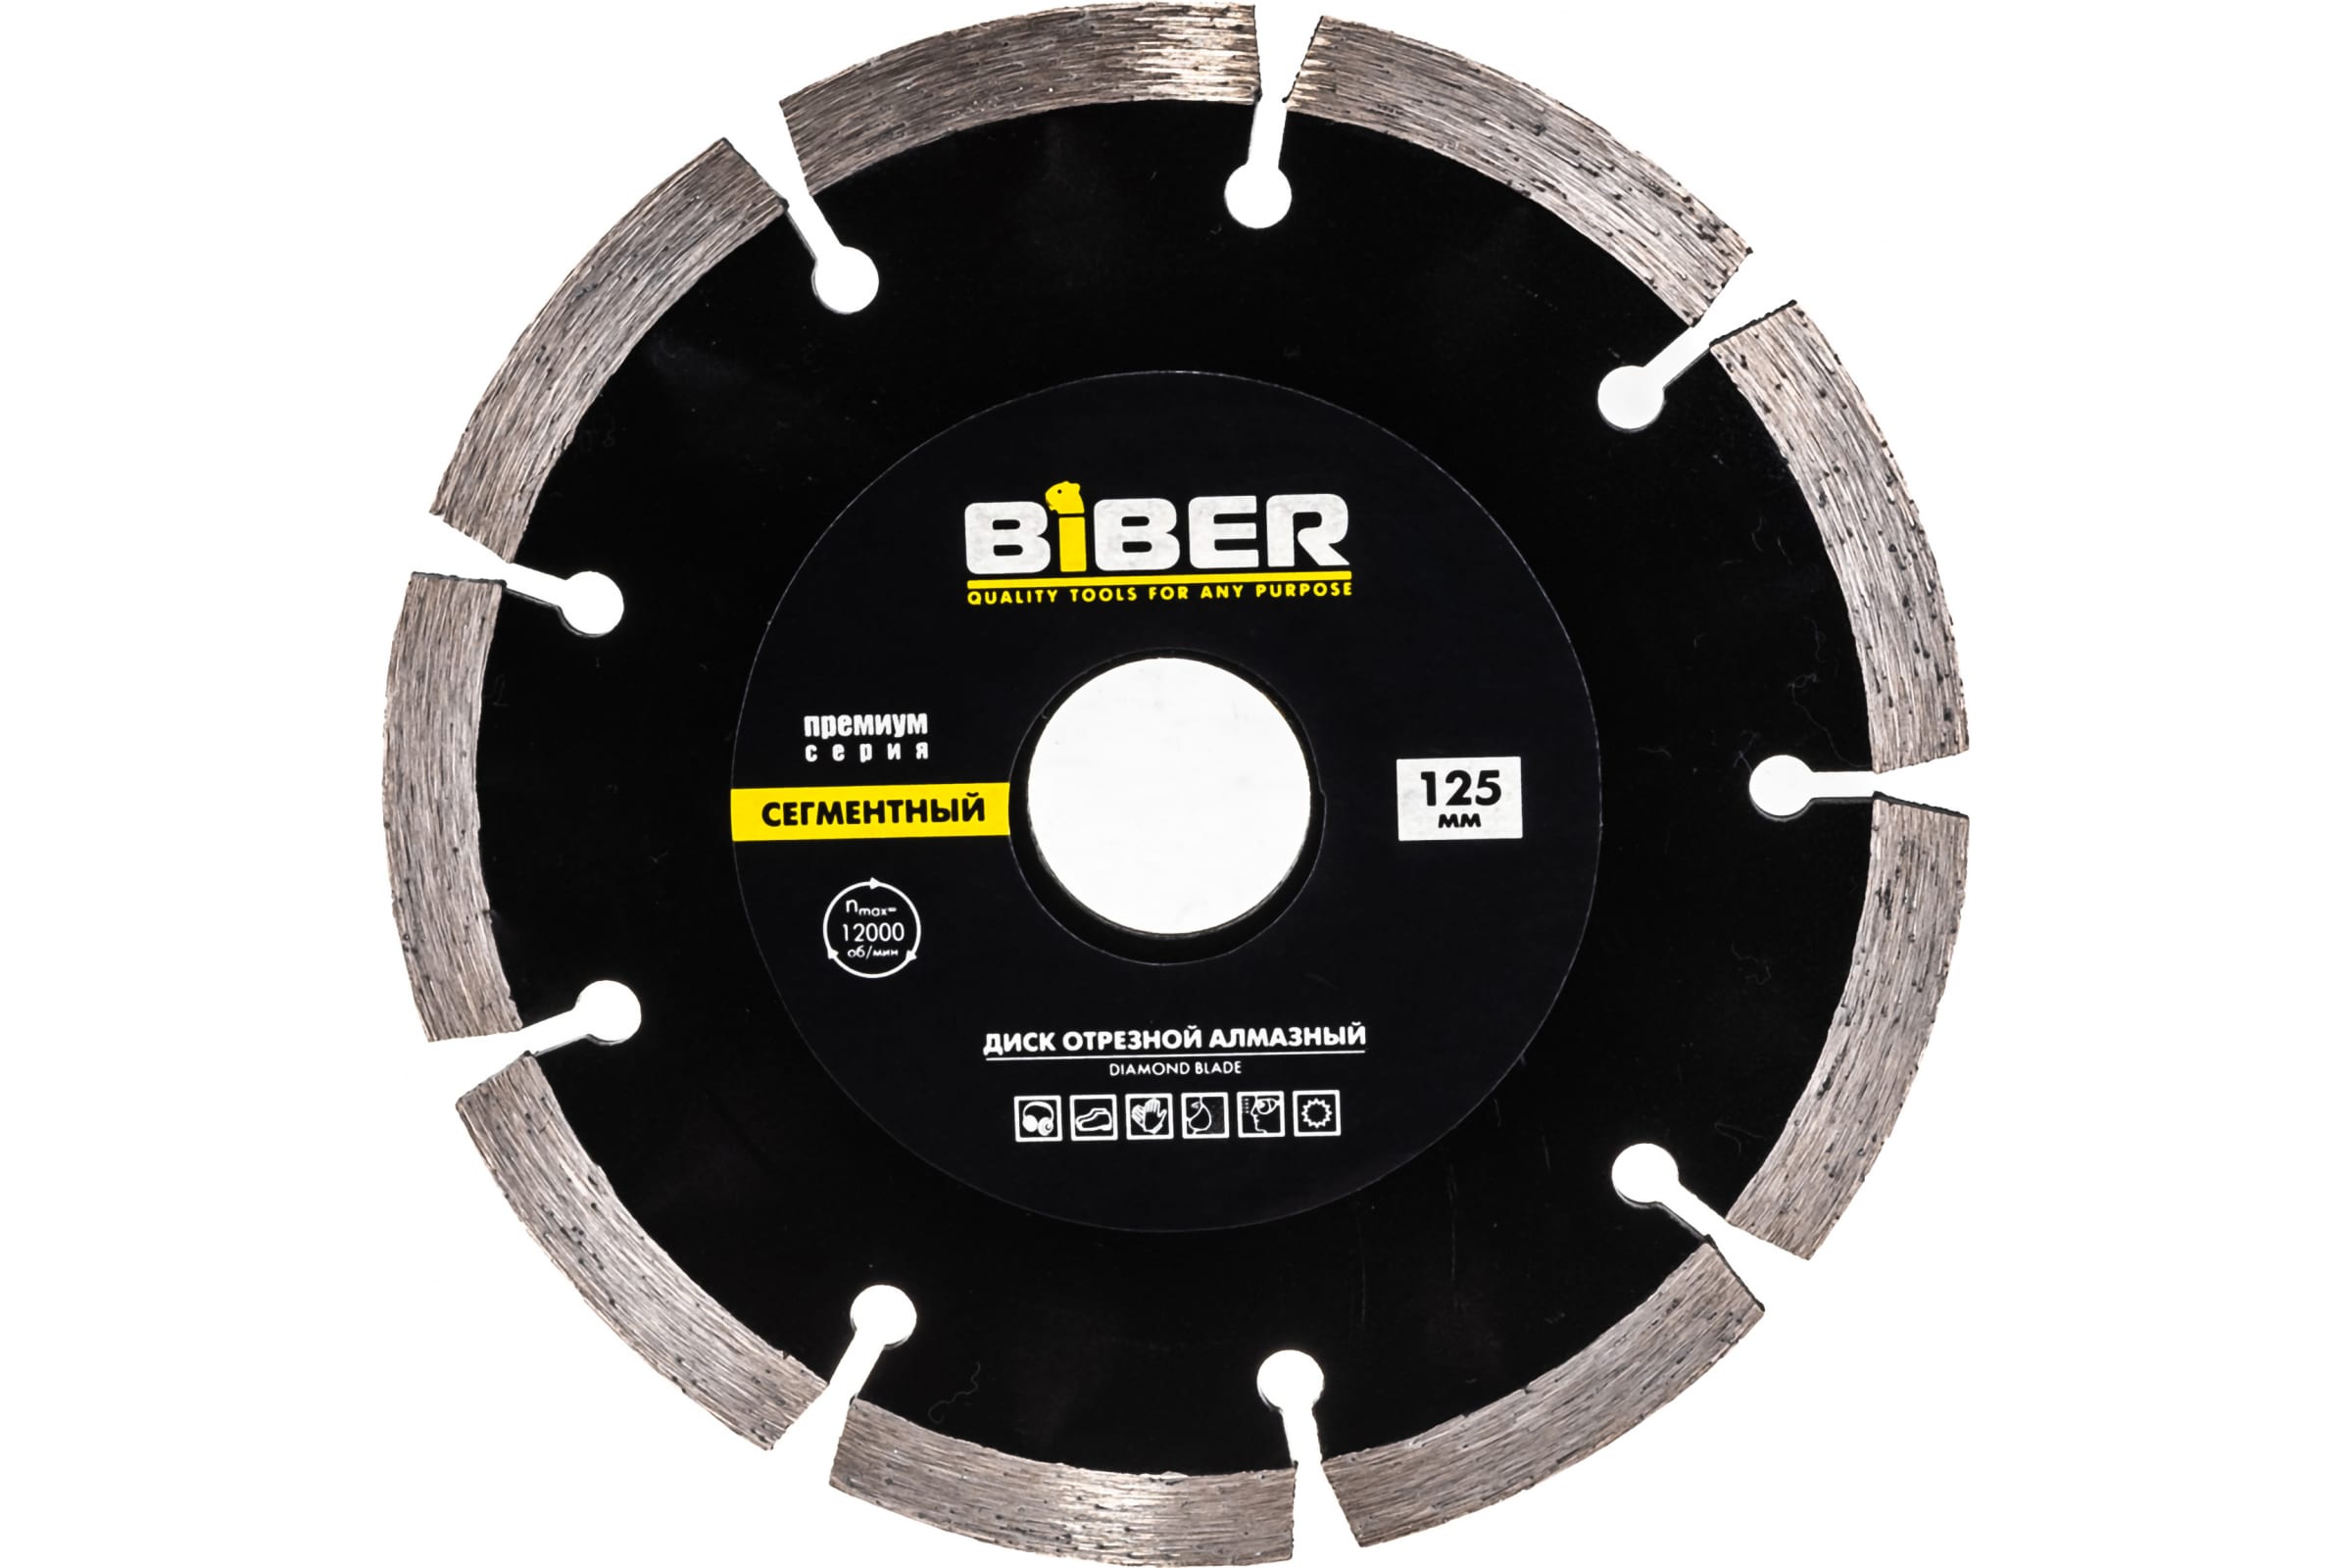 Biber Диск алмазный сегментный Премиум 125мм 70263 тов-039552 универсальный опорный диск для шлифовальной бумаги biber